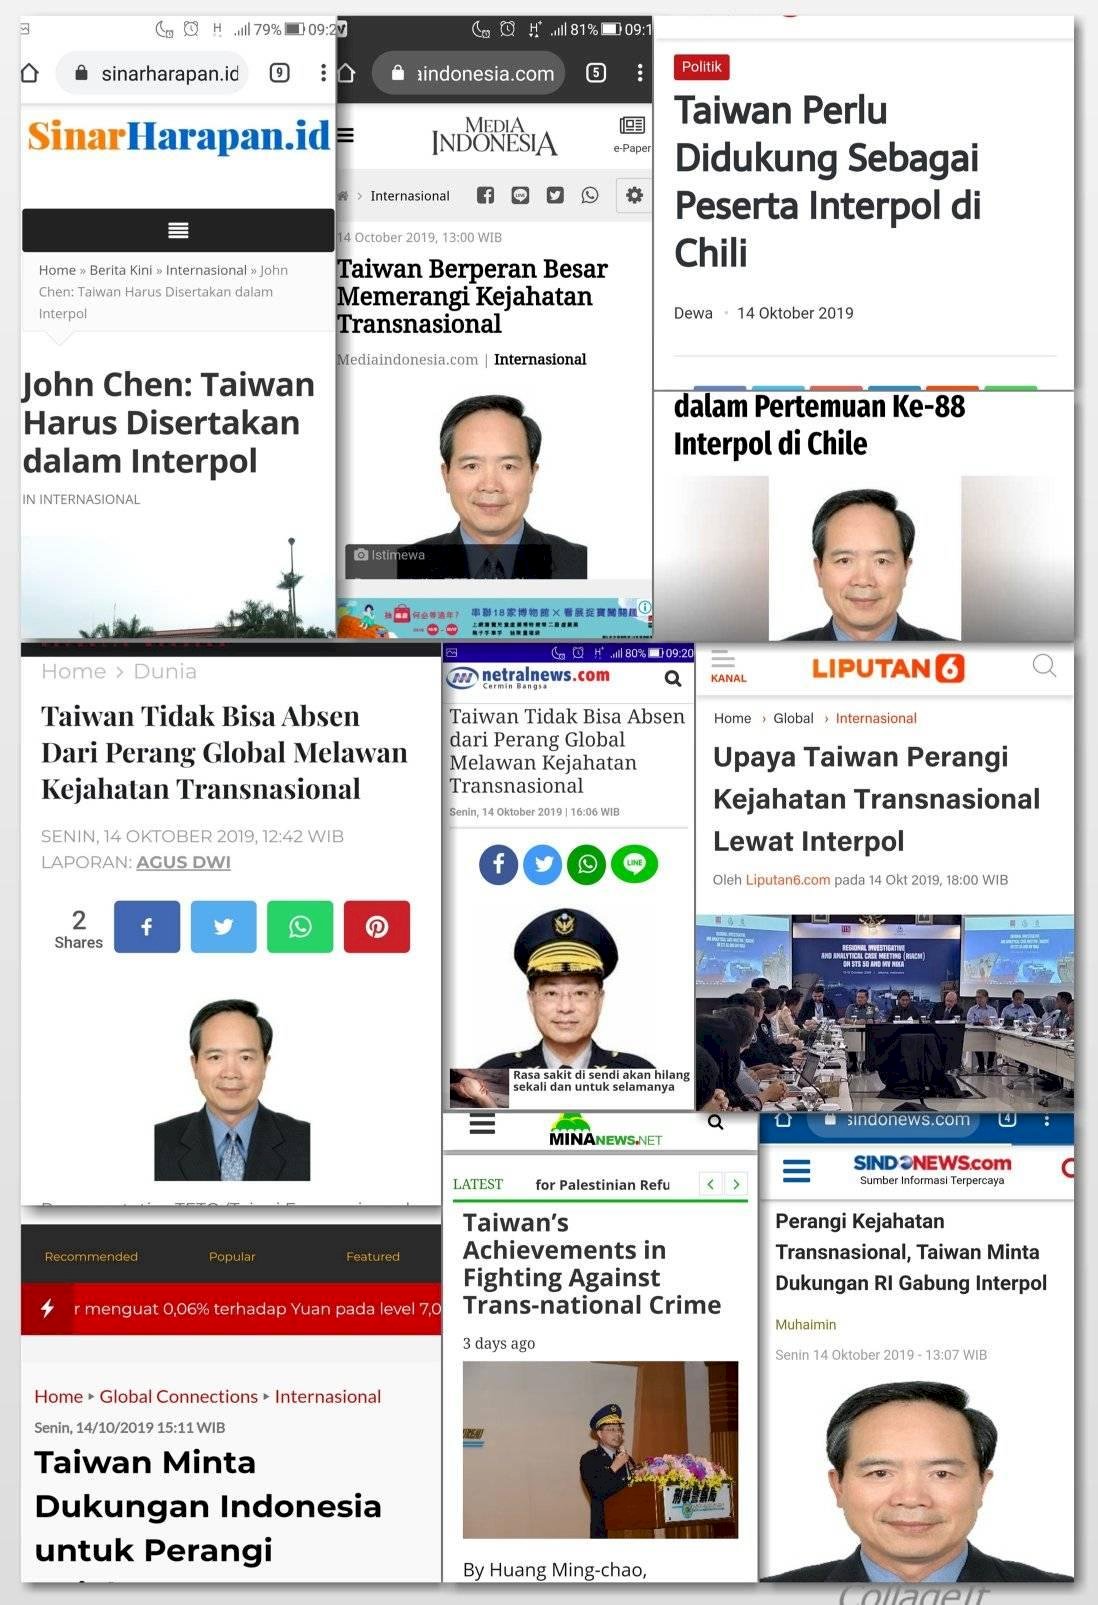 官員投書印尼媒體 籲支持台灣參與國際刑警組織